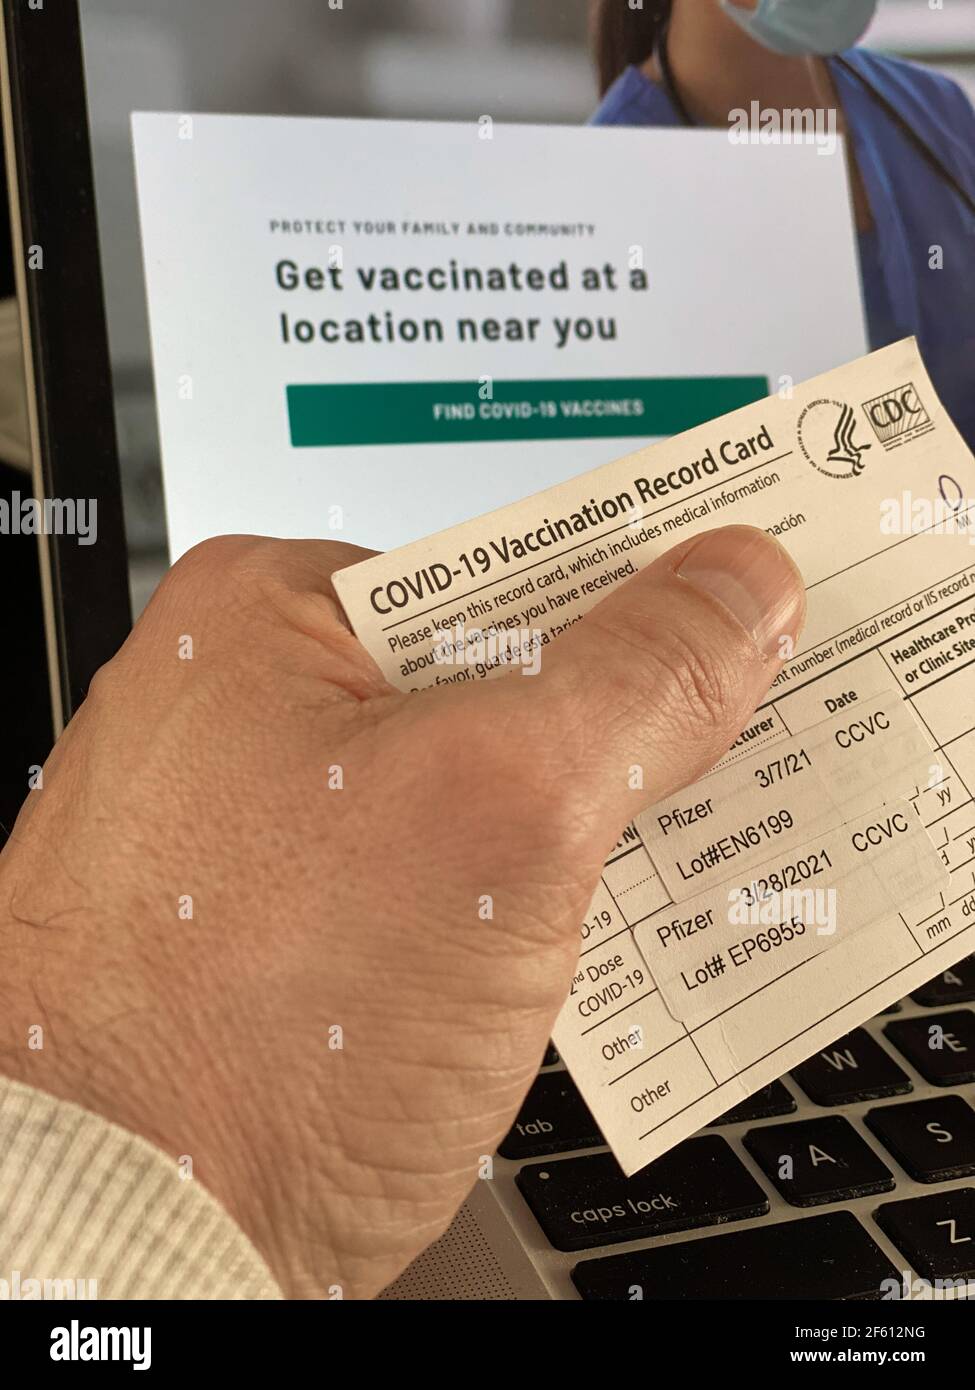 Philadelphie, PA, 29 mars 2021, USA - CDC COVID-29 carte de vaccination montrant le bénéficiaire a reçu 2 doses du vaccin Pfizer crédit: Don Mennig/Alay Live News Banque D'Images